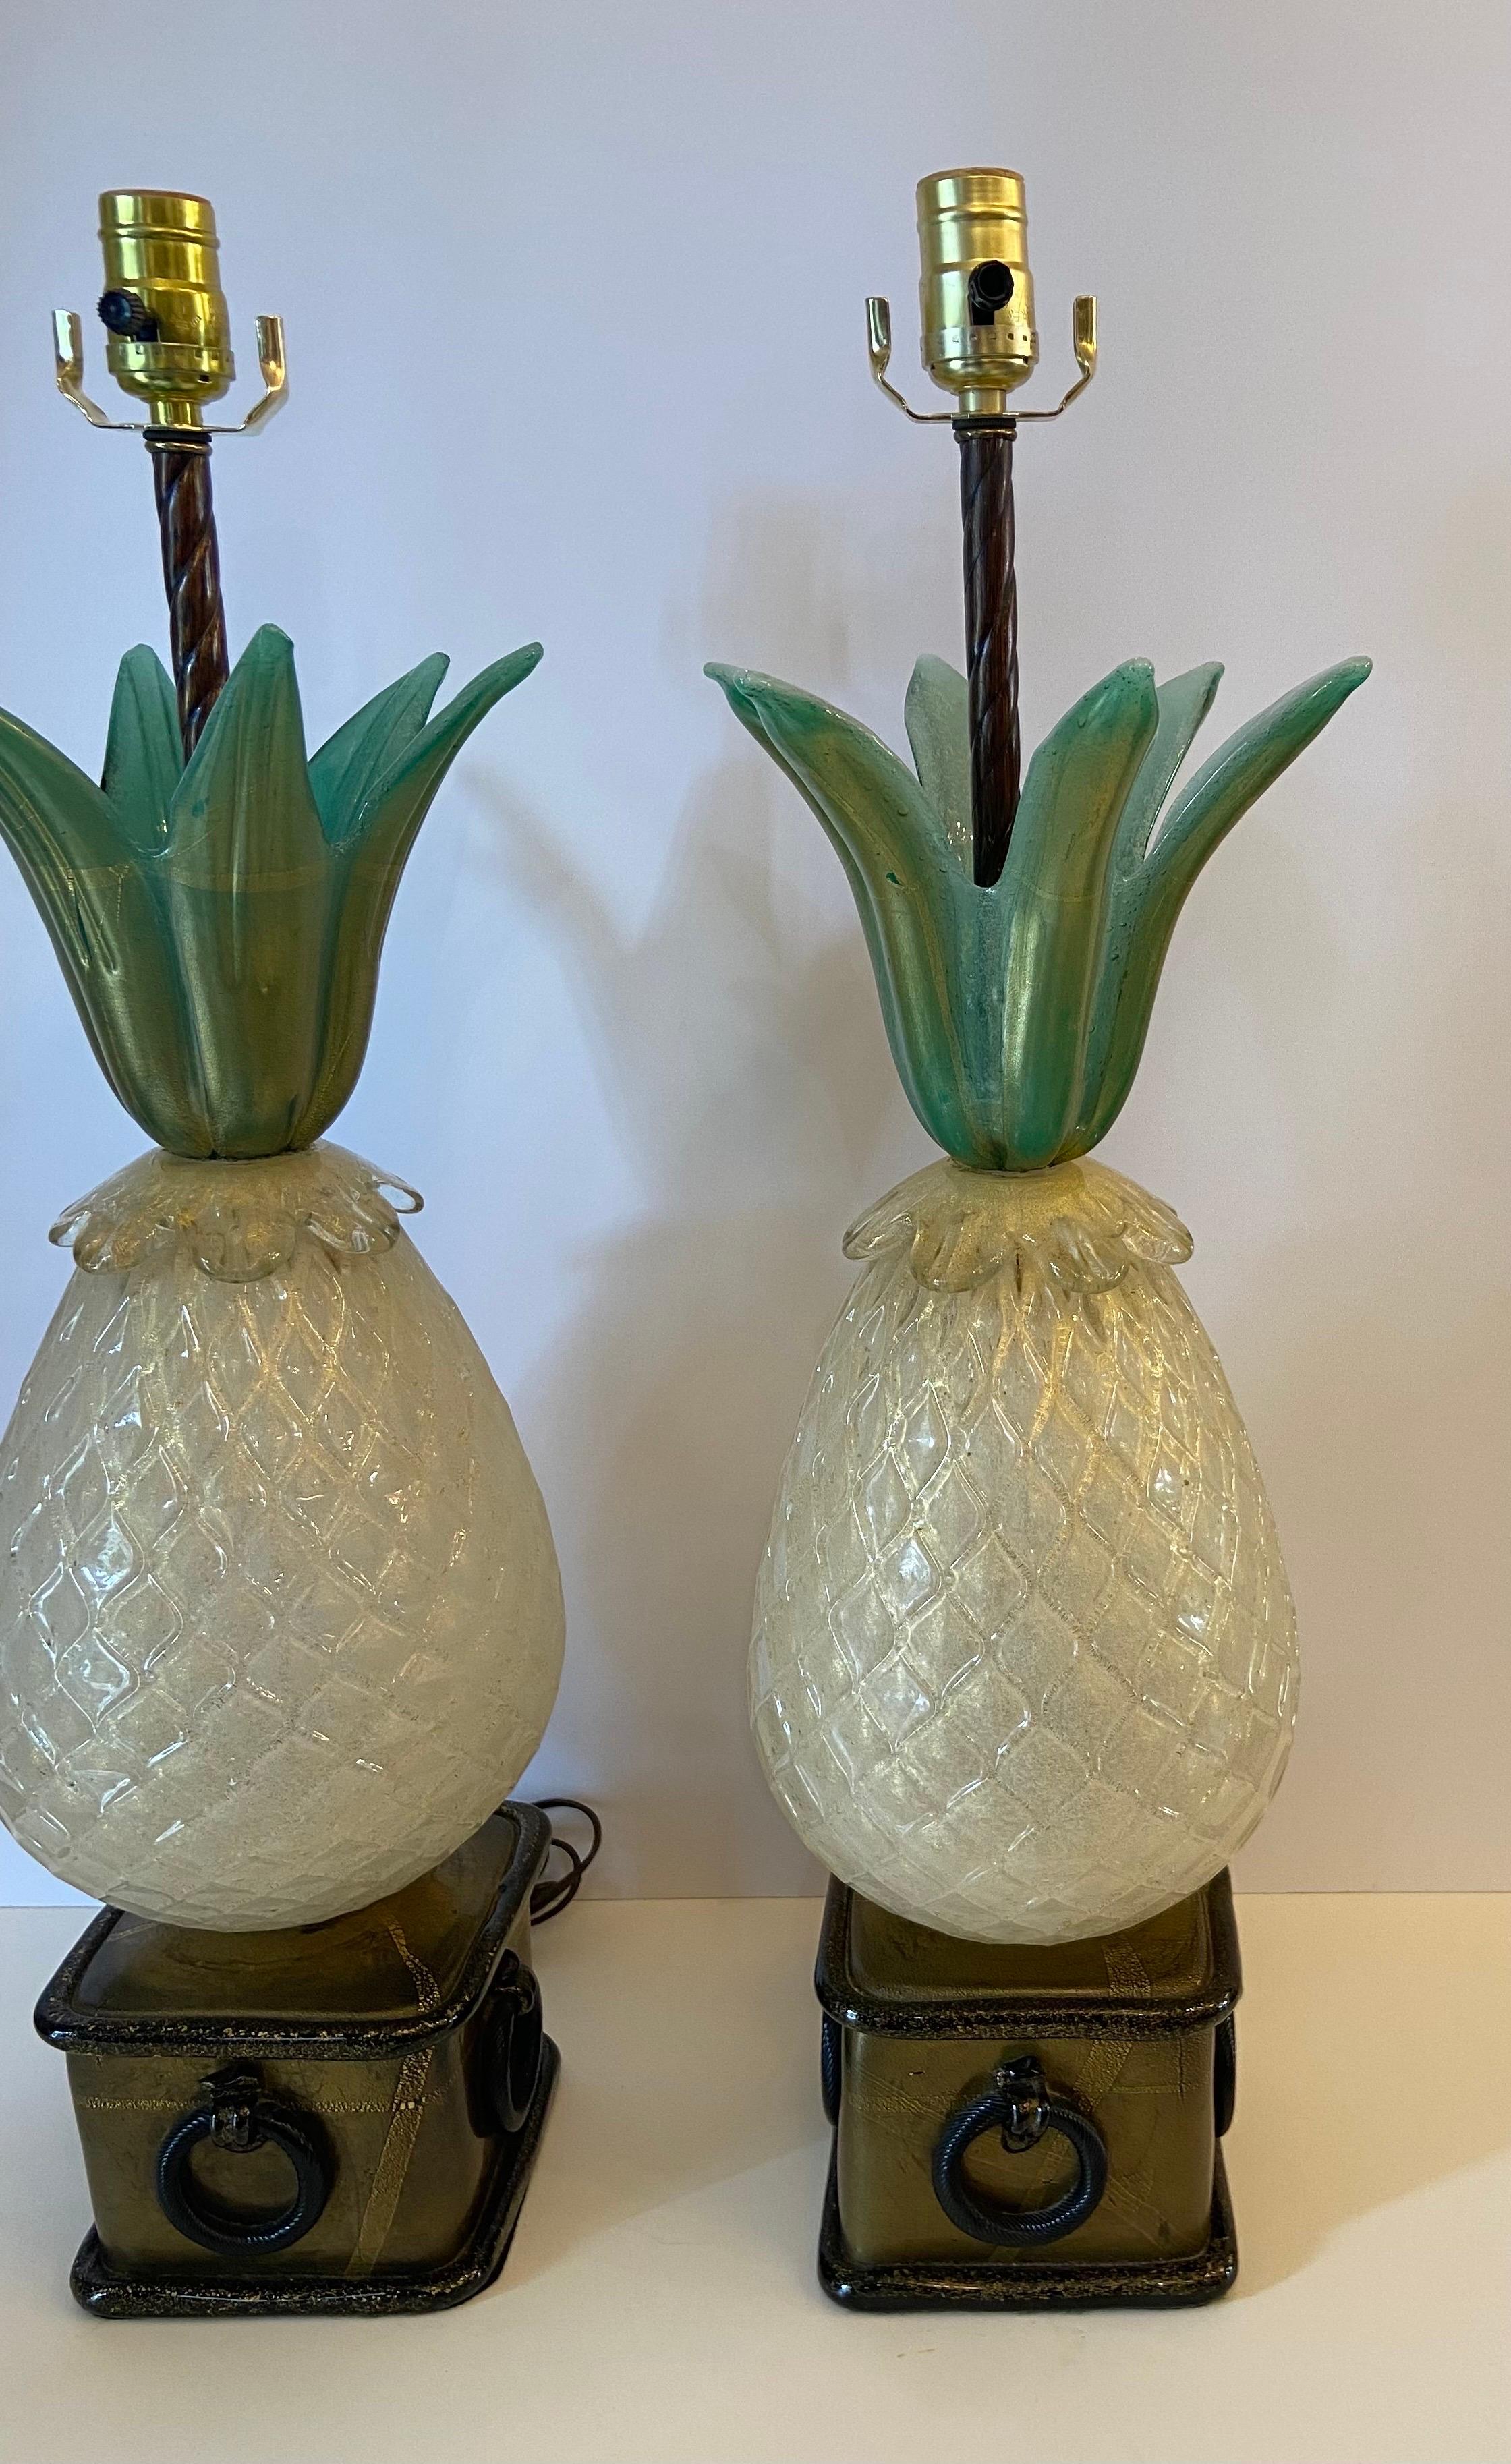 Paar exquisite Murano Ananas Form Lampen ca. 1950... Paar Lampen vor kurzem von der ursprünglichen Familie erworben... Sie wurden neu verdrahtet gereinigt und wieder zusammen professionell ... alles ist dicht... Das Glas ist frei von Chips, Kerben